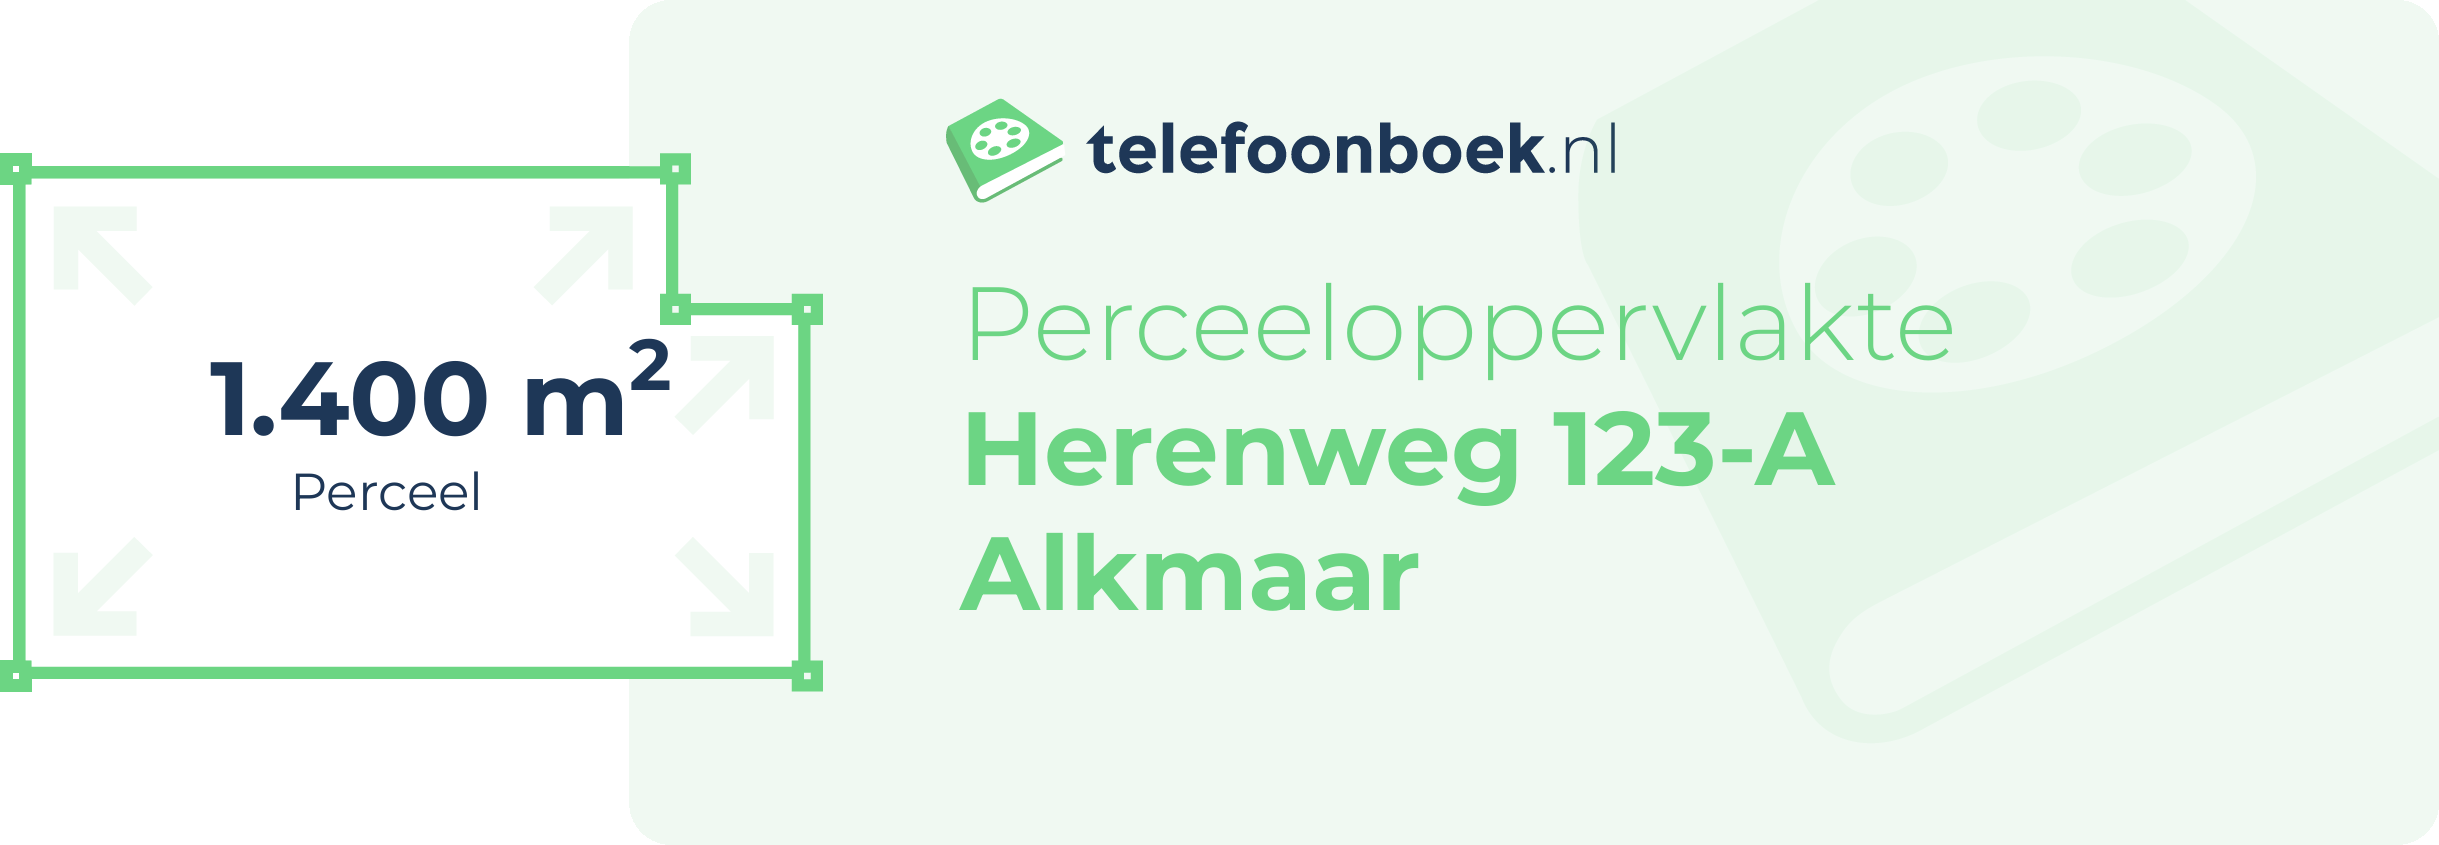 Perceeloppervlakte Herenweg 123-A Alkmaar